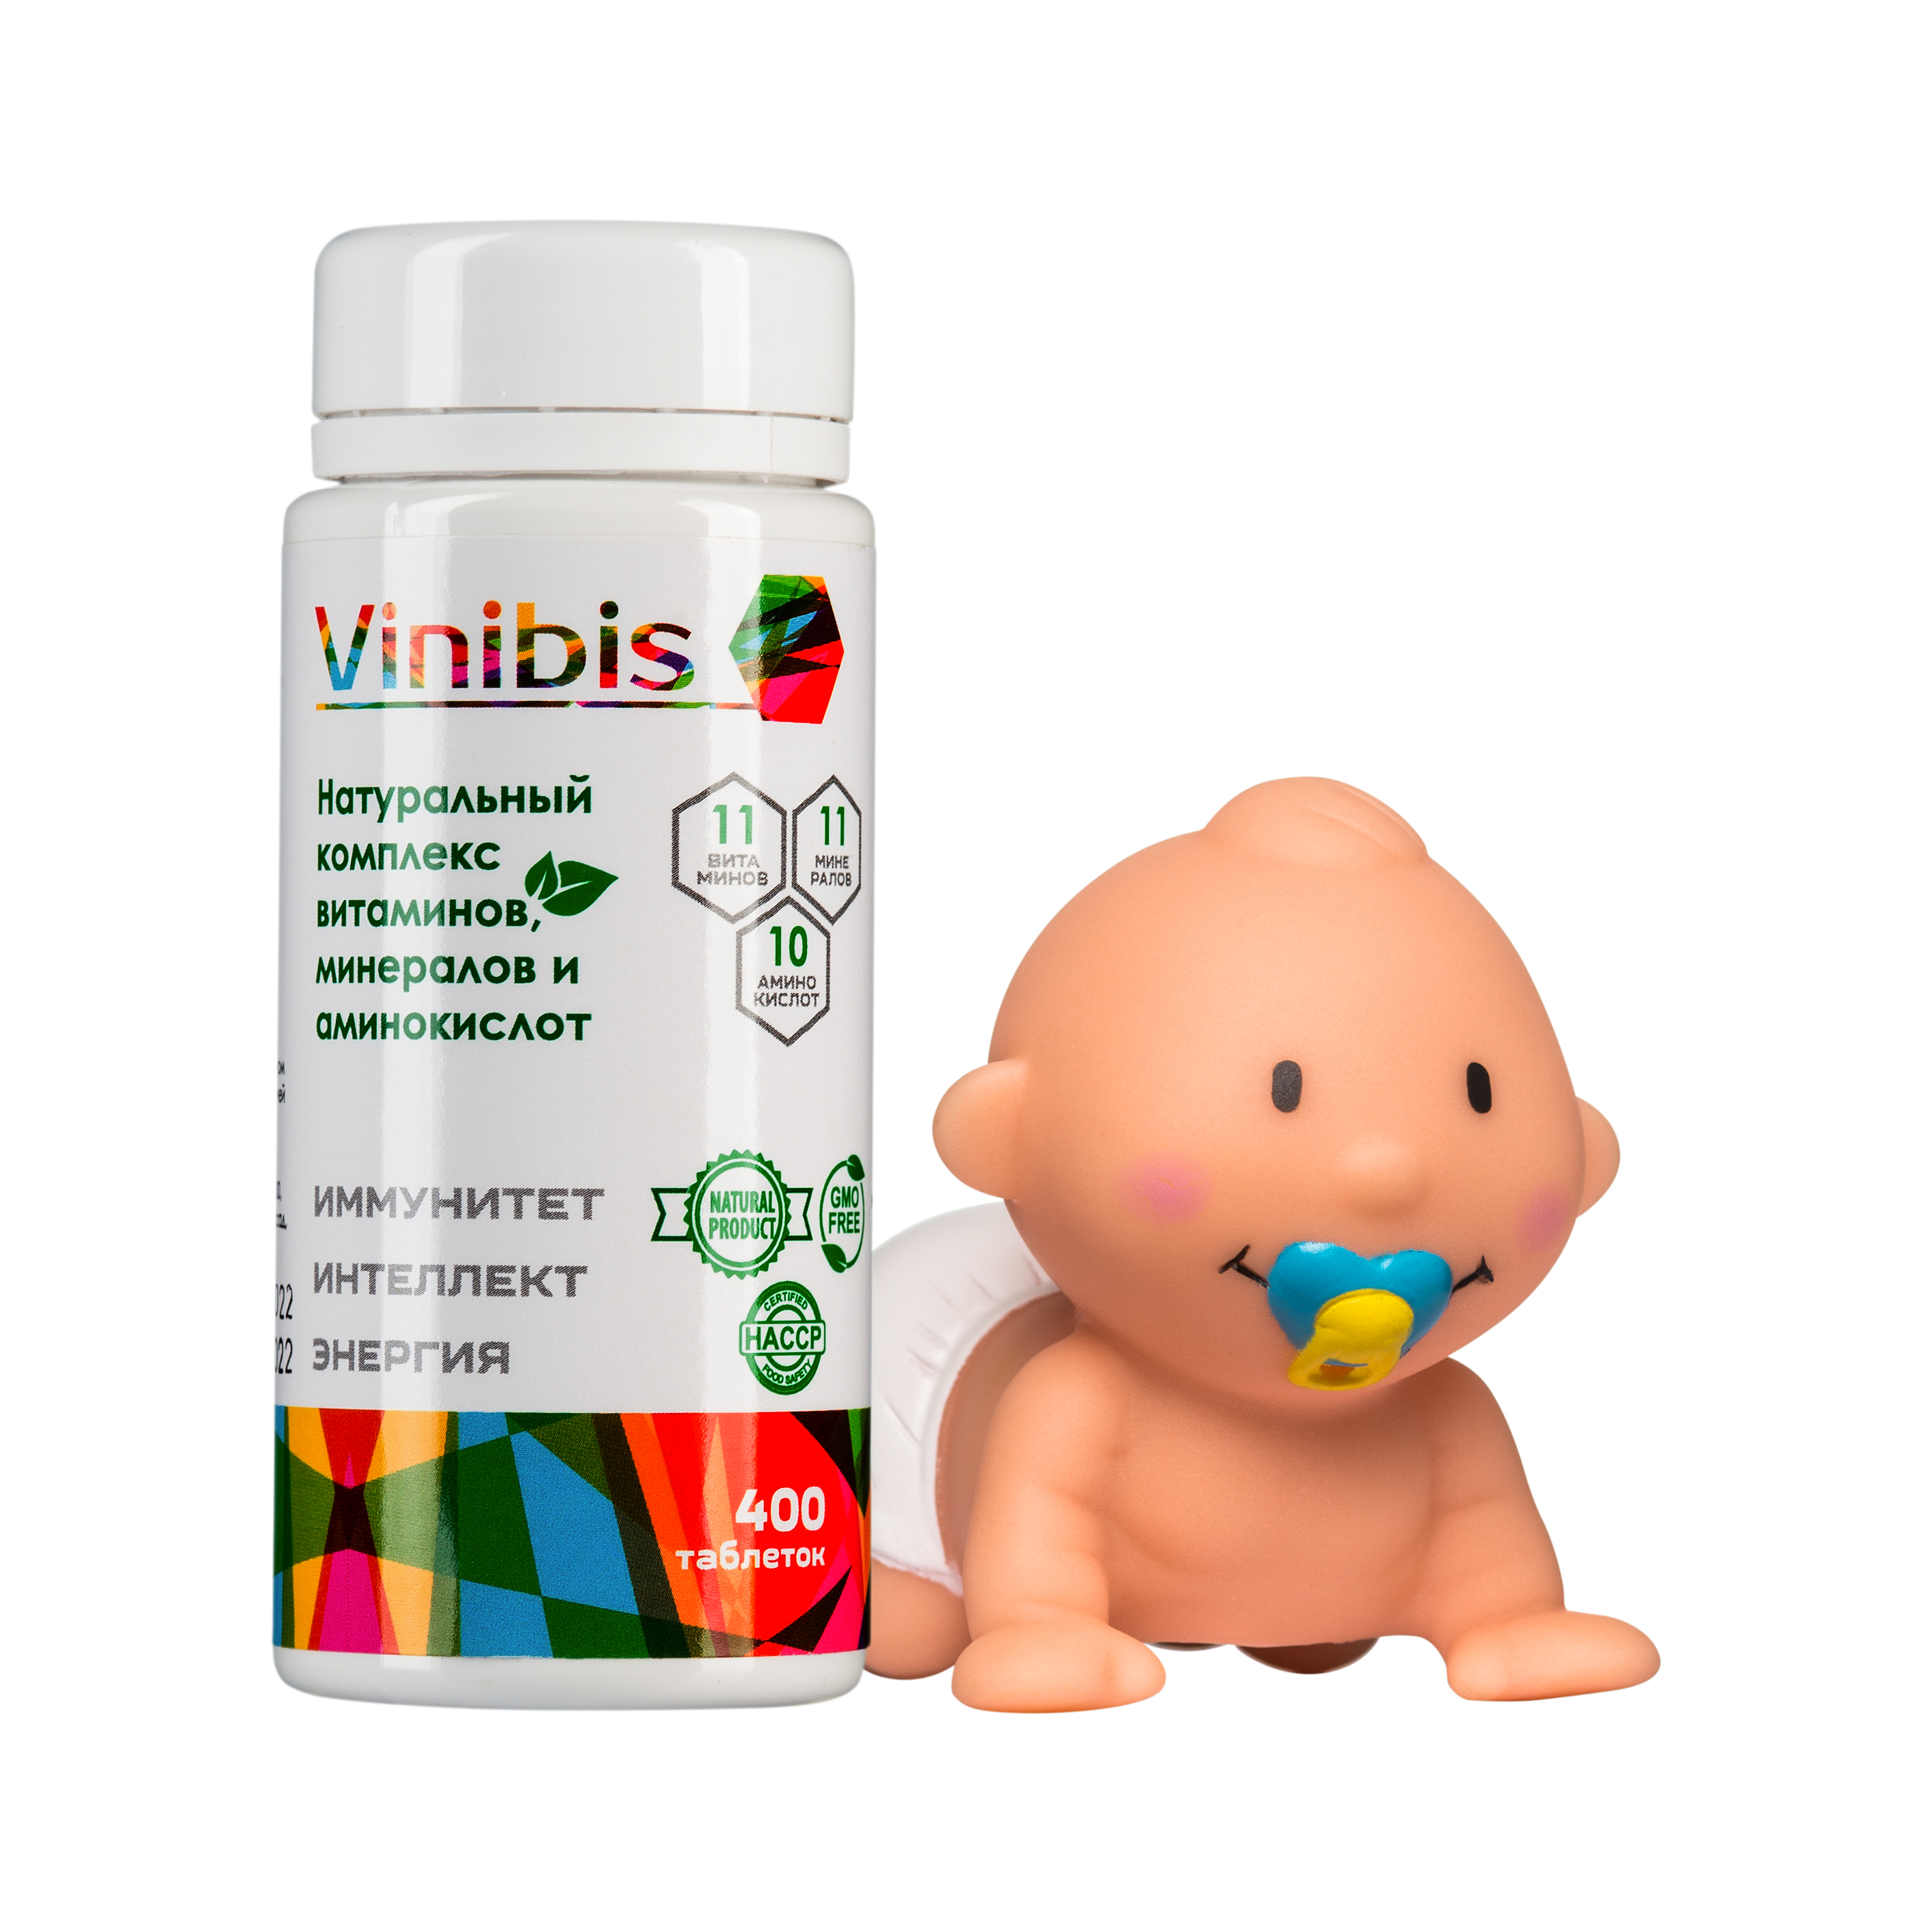 Купить Комплекс витаминов, минералов и аминокислот Vinibis C для всей семьи, 400 табл